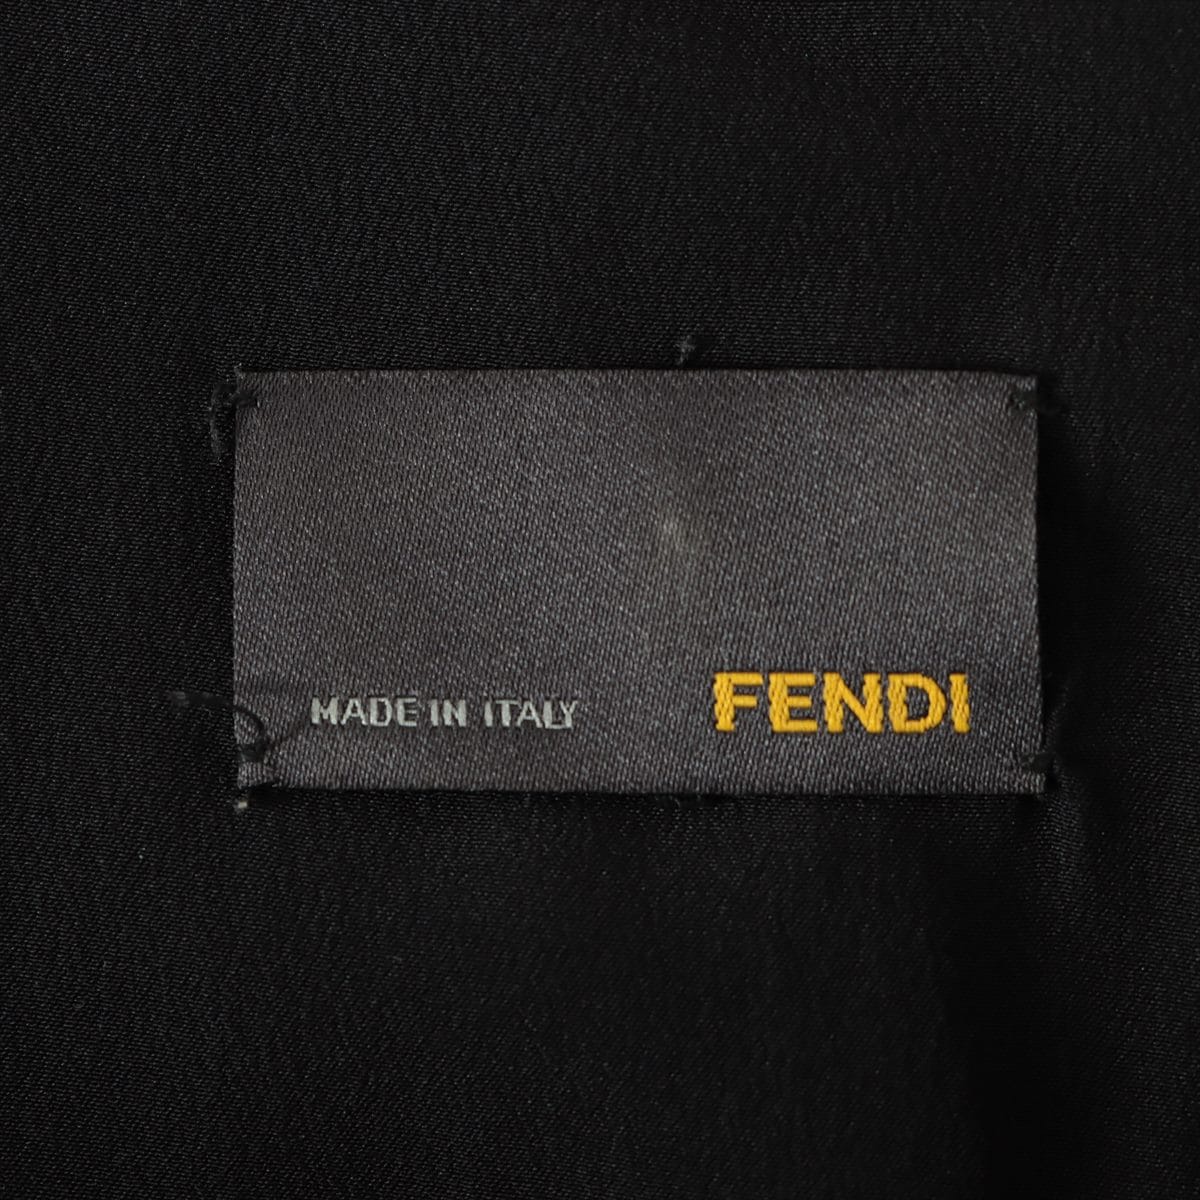 Fendi 13 years Silk Sleeveless dress 40 Ladies' Black x yellow